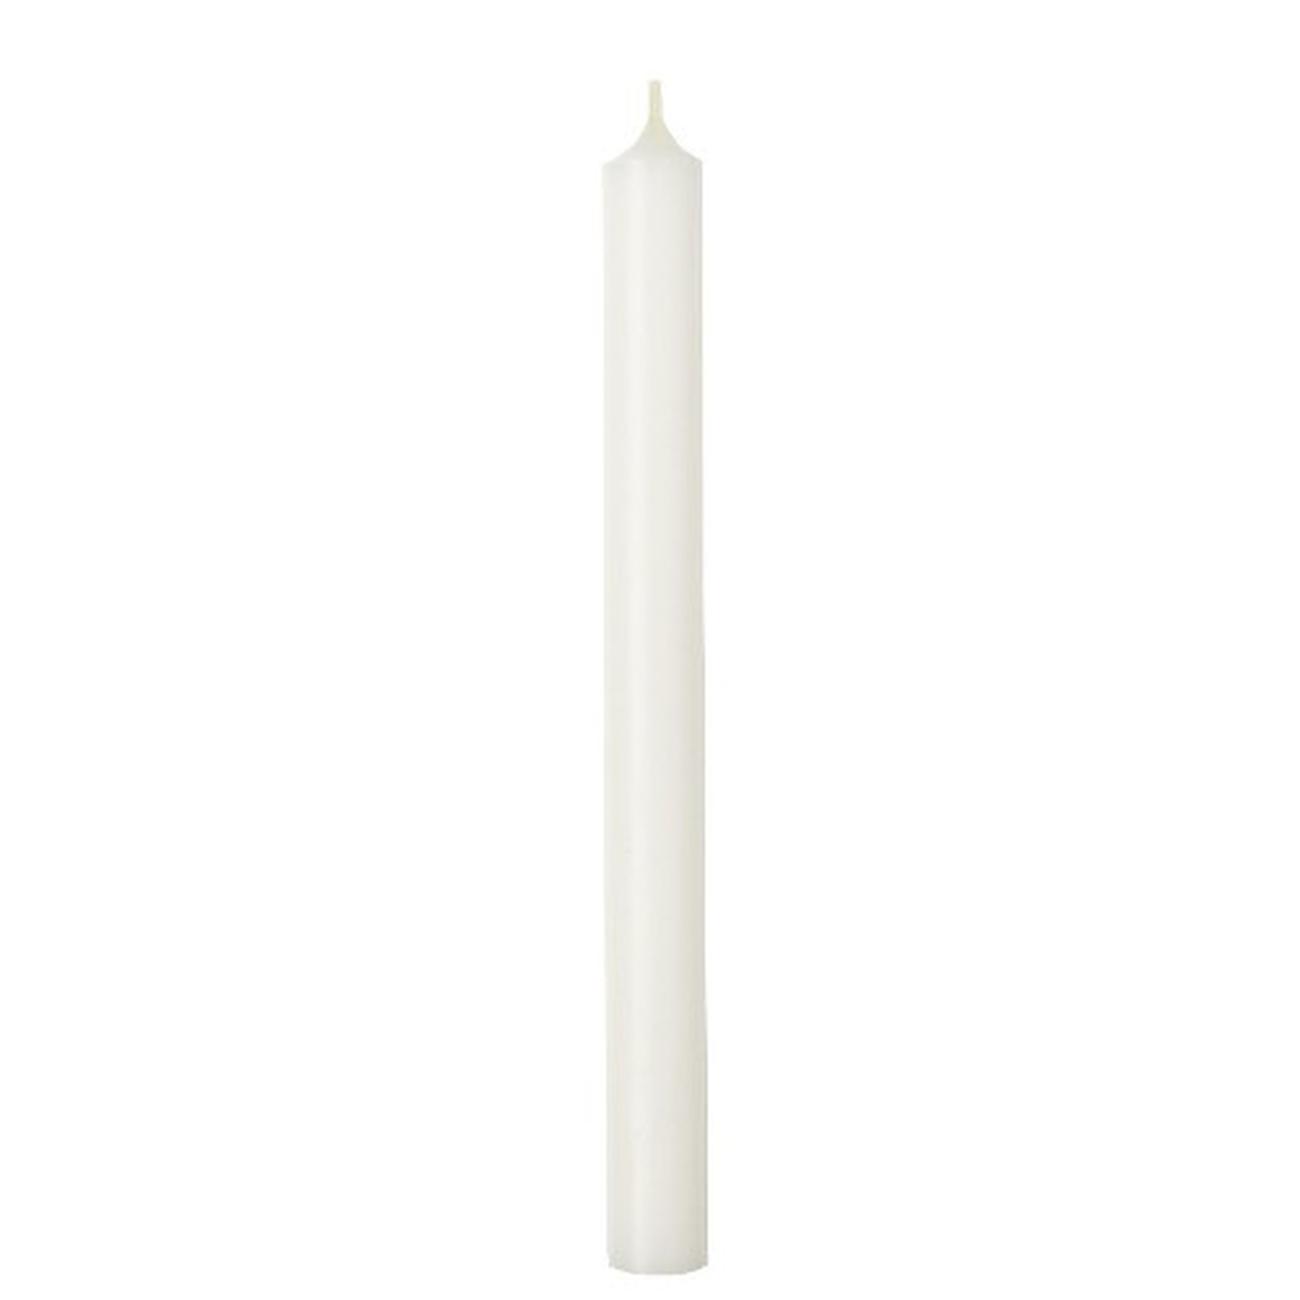 ihr-cylinder-candle-white - IHR Cylinder Candle White